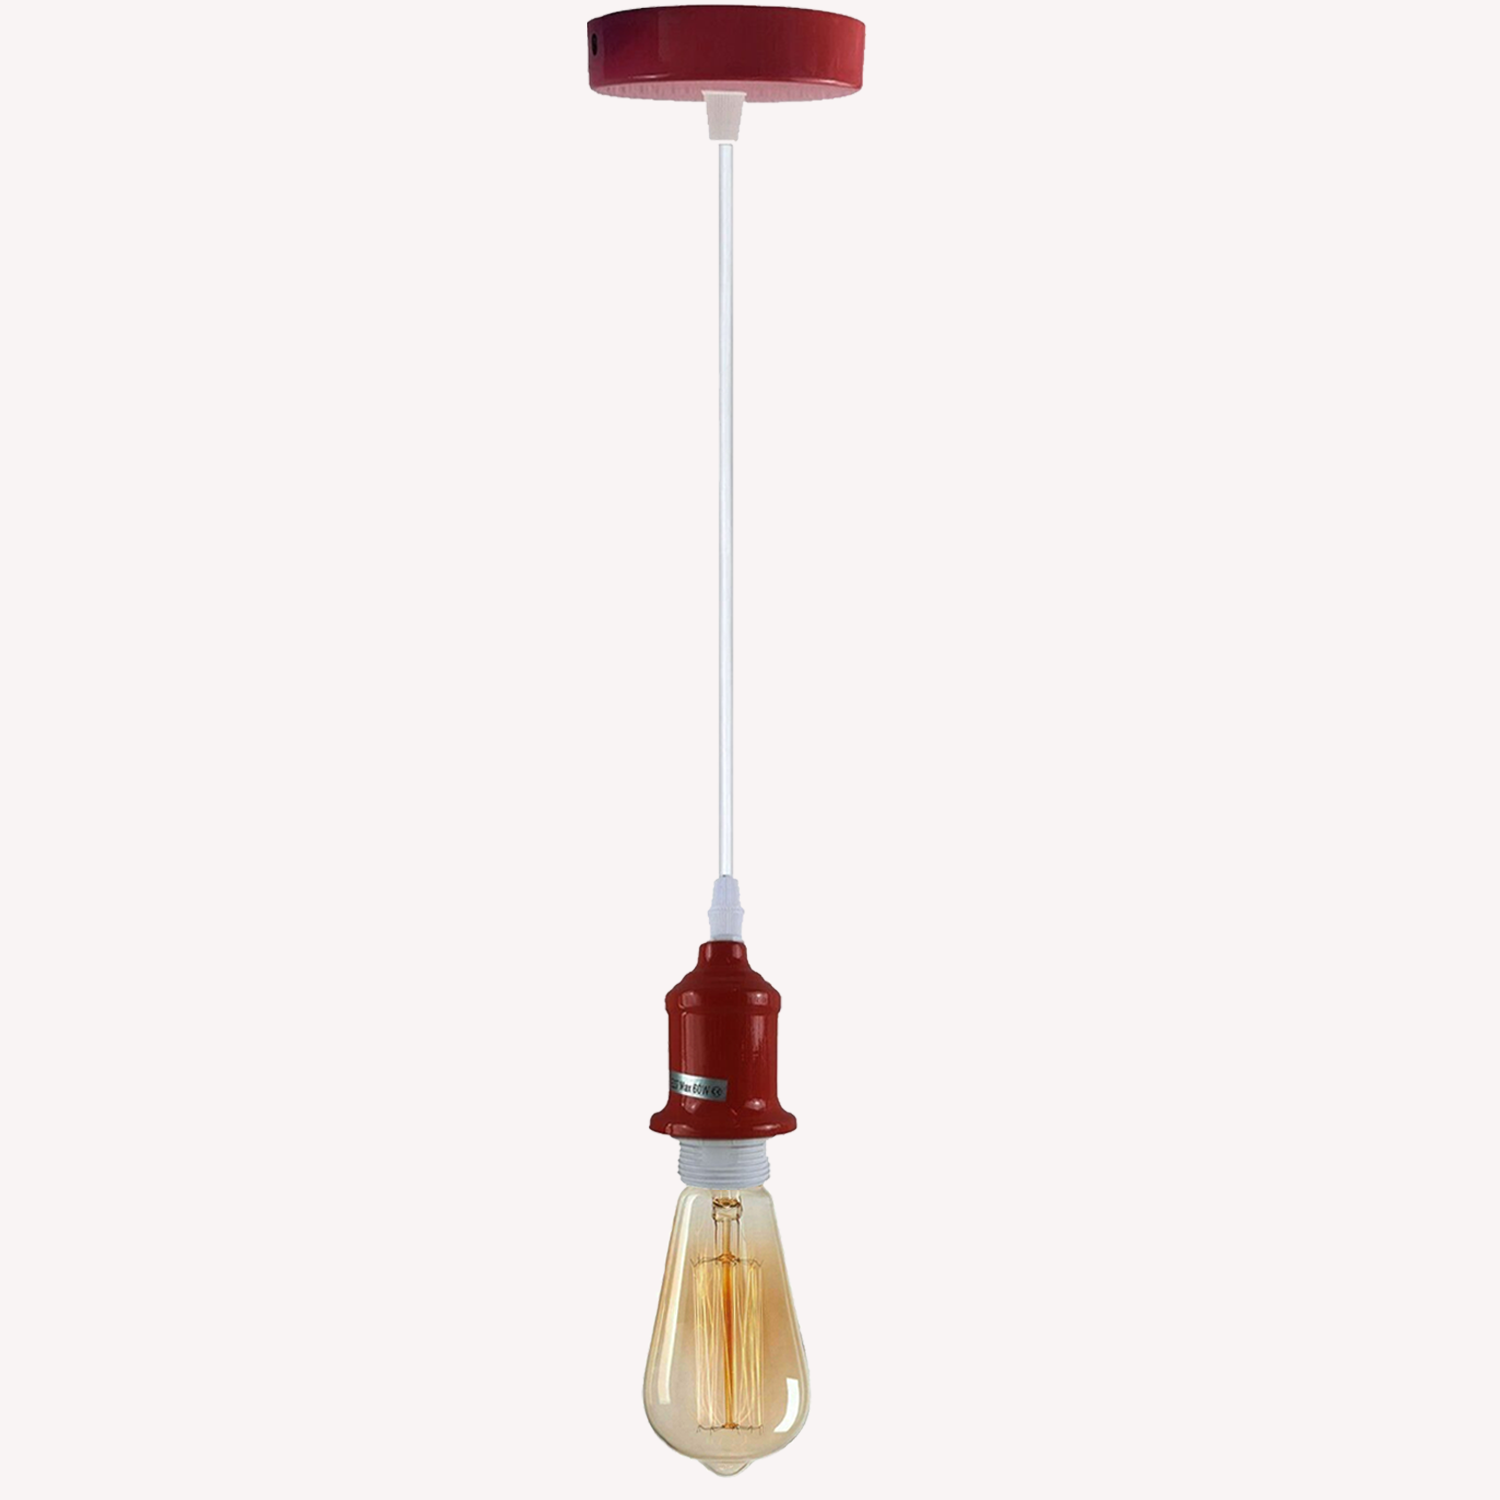 E27 Pendant Holder Ceiling Light Fitting Vintage Industrial Burgundy